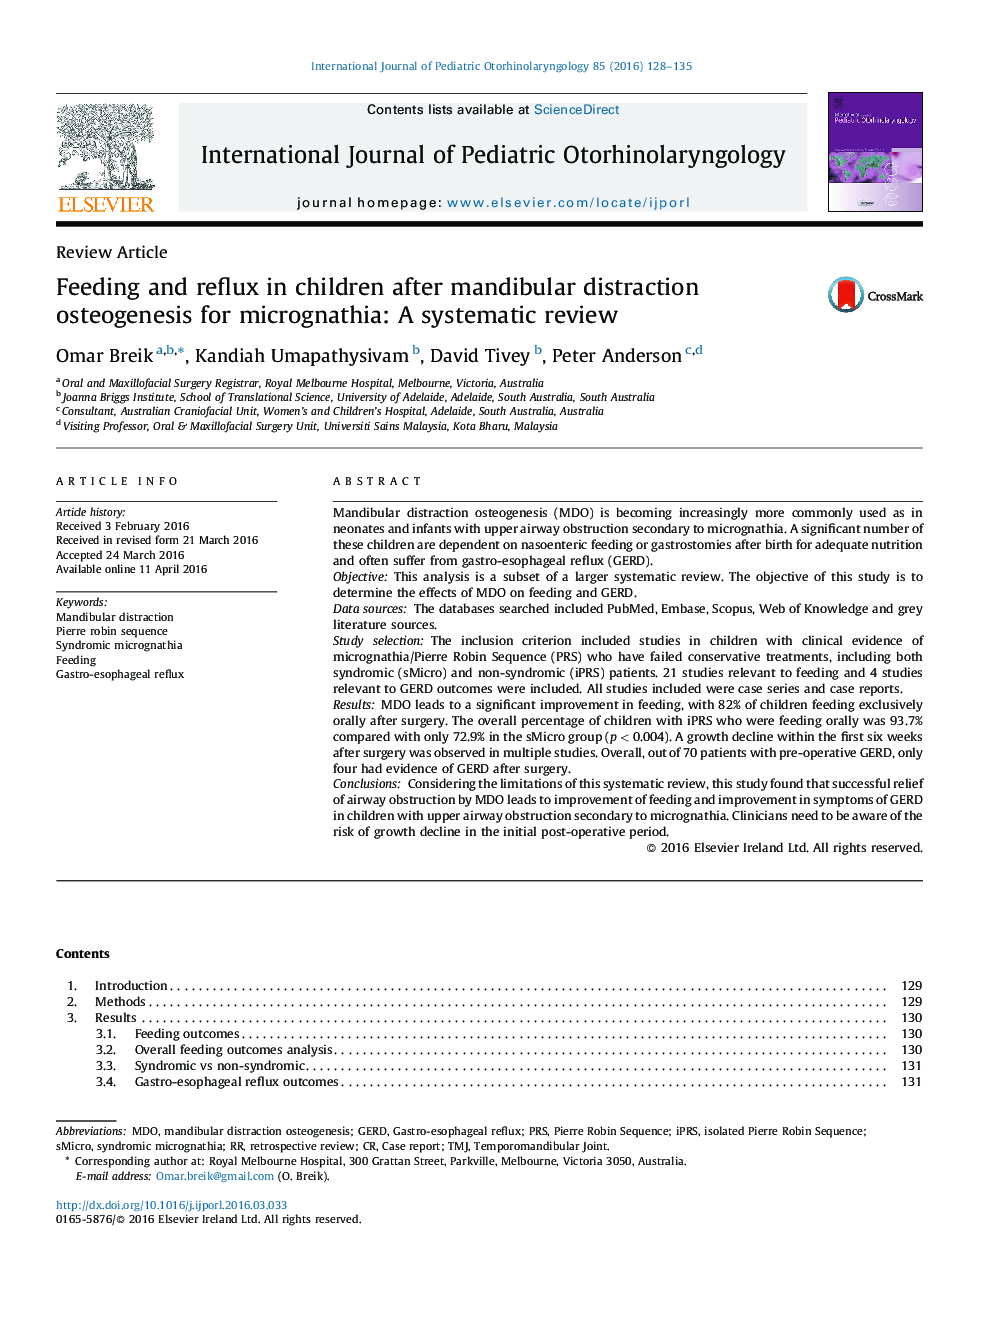 تغذیه و ریفلاکس در کودکان پس از استئوژنز حسی از کمر درد برای میکروگناتیا: بررسی سیستماتیک 